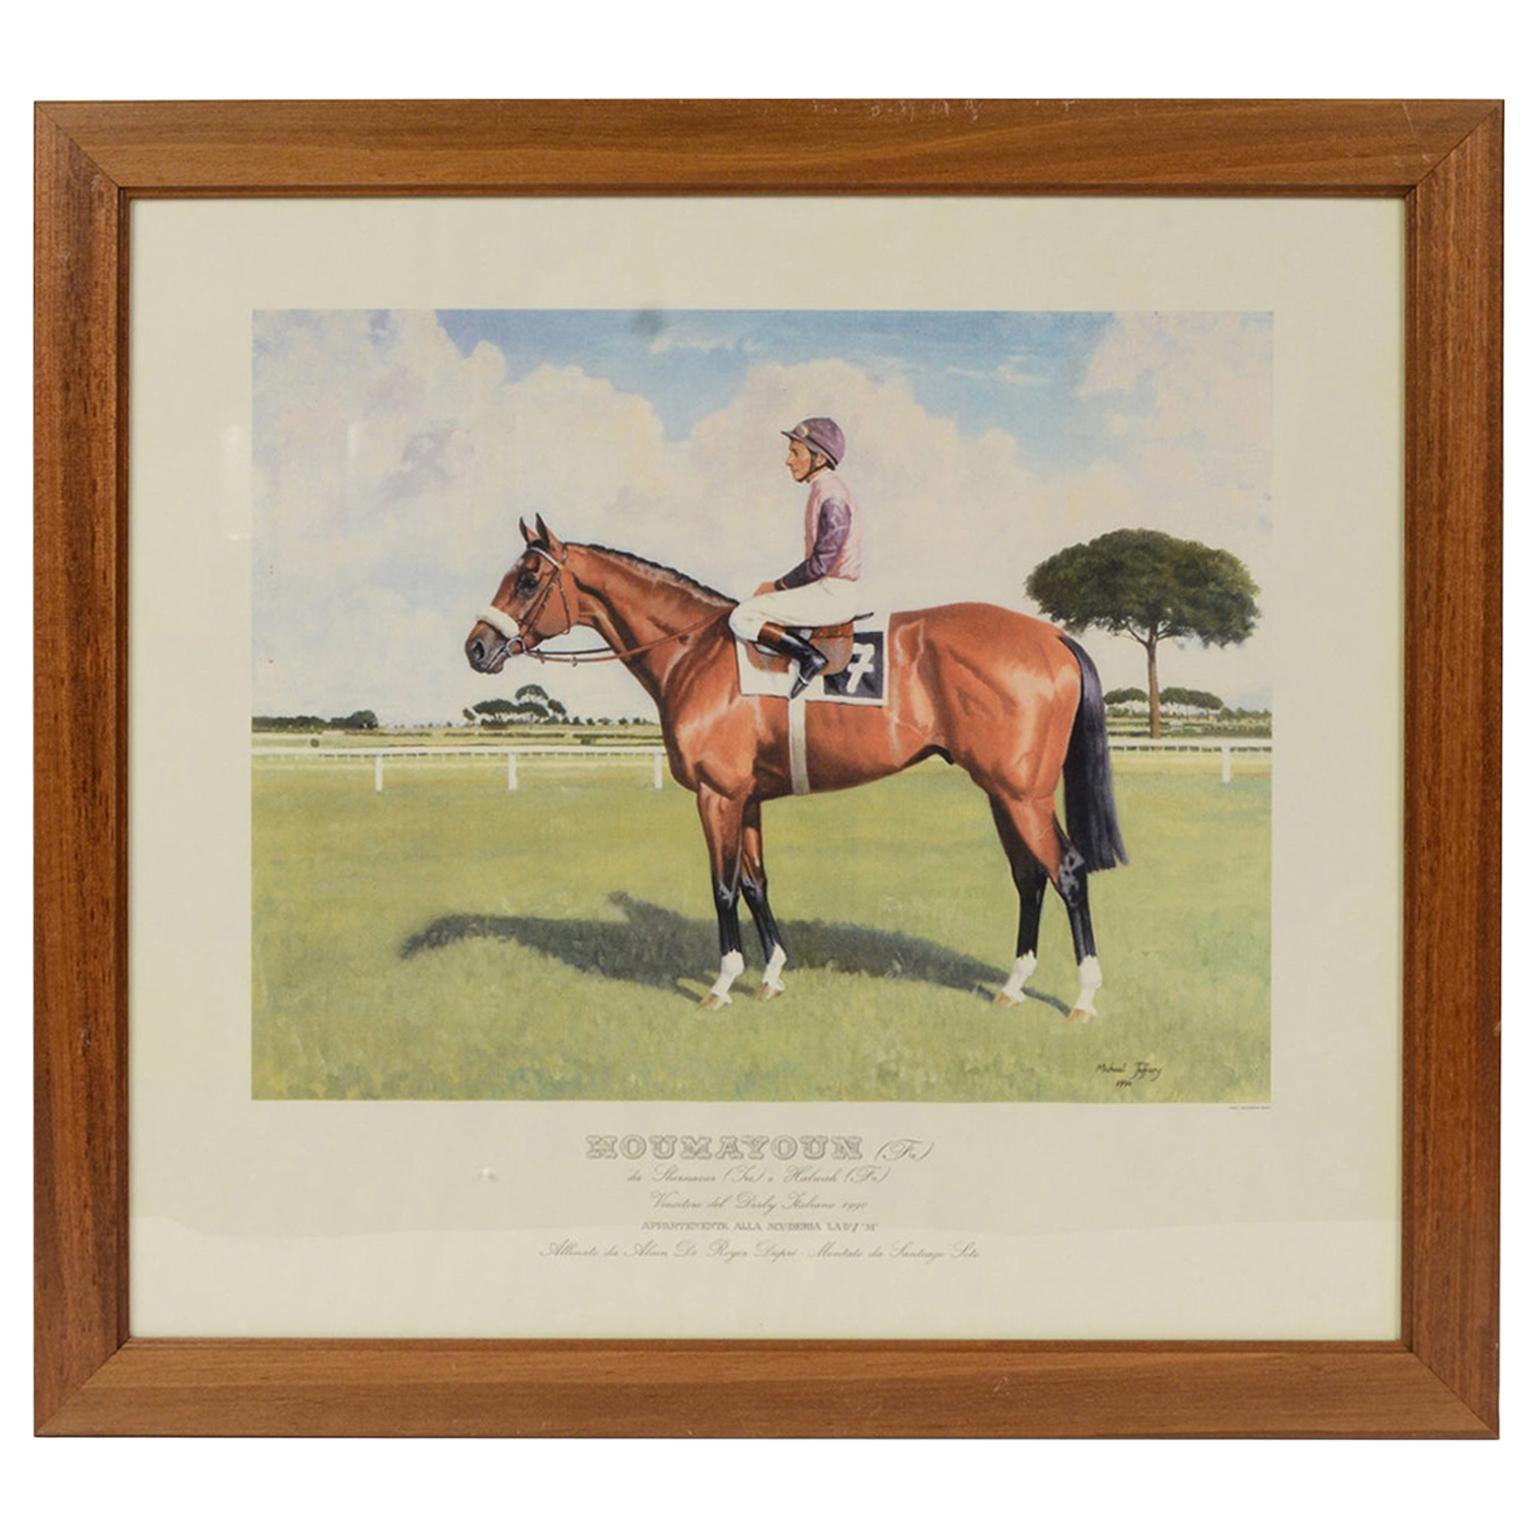 Lithographie, die den Pferdegewinner des italienischen Derbys von 1990 darstellt